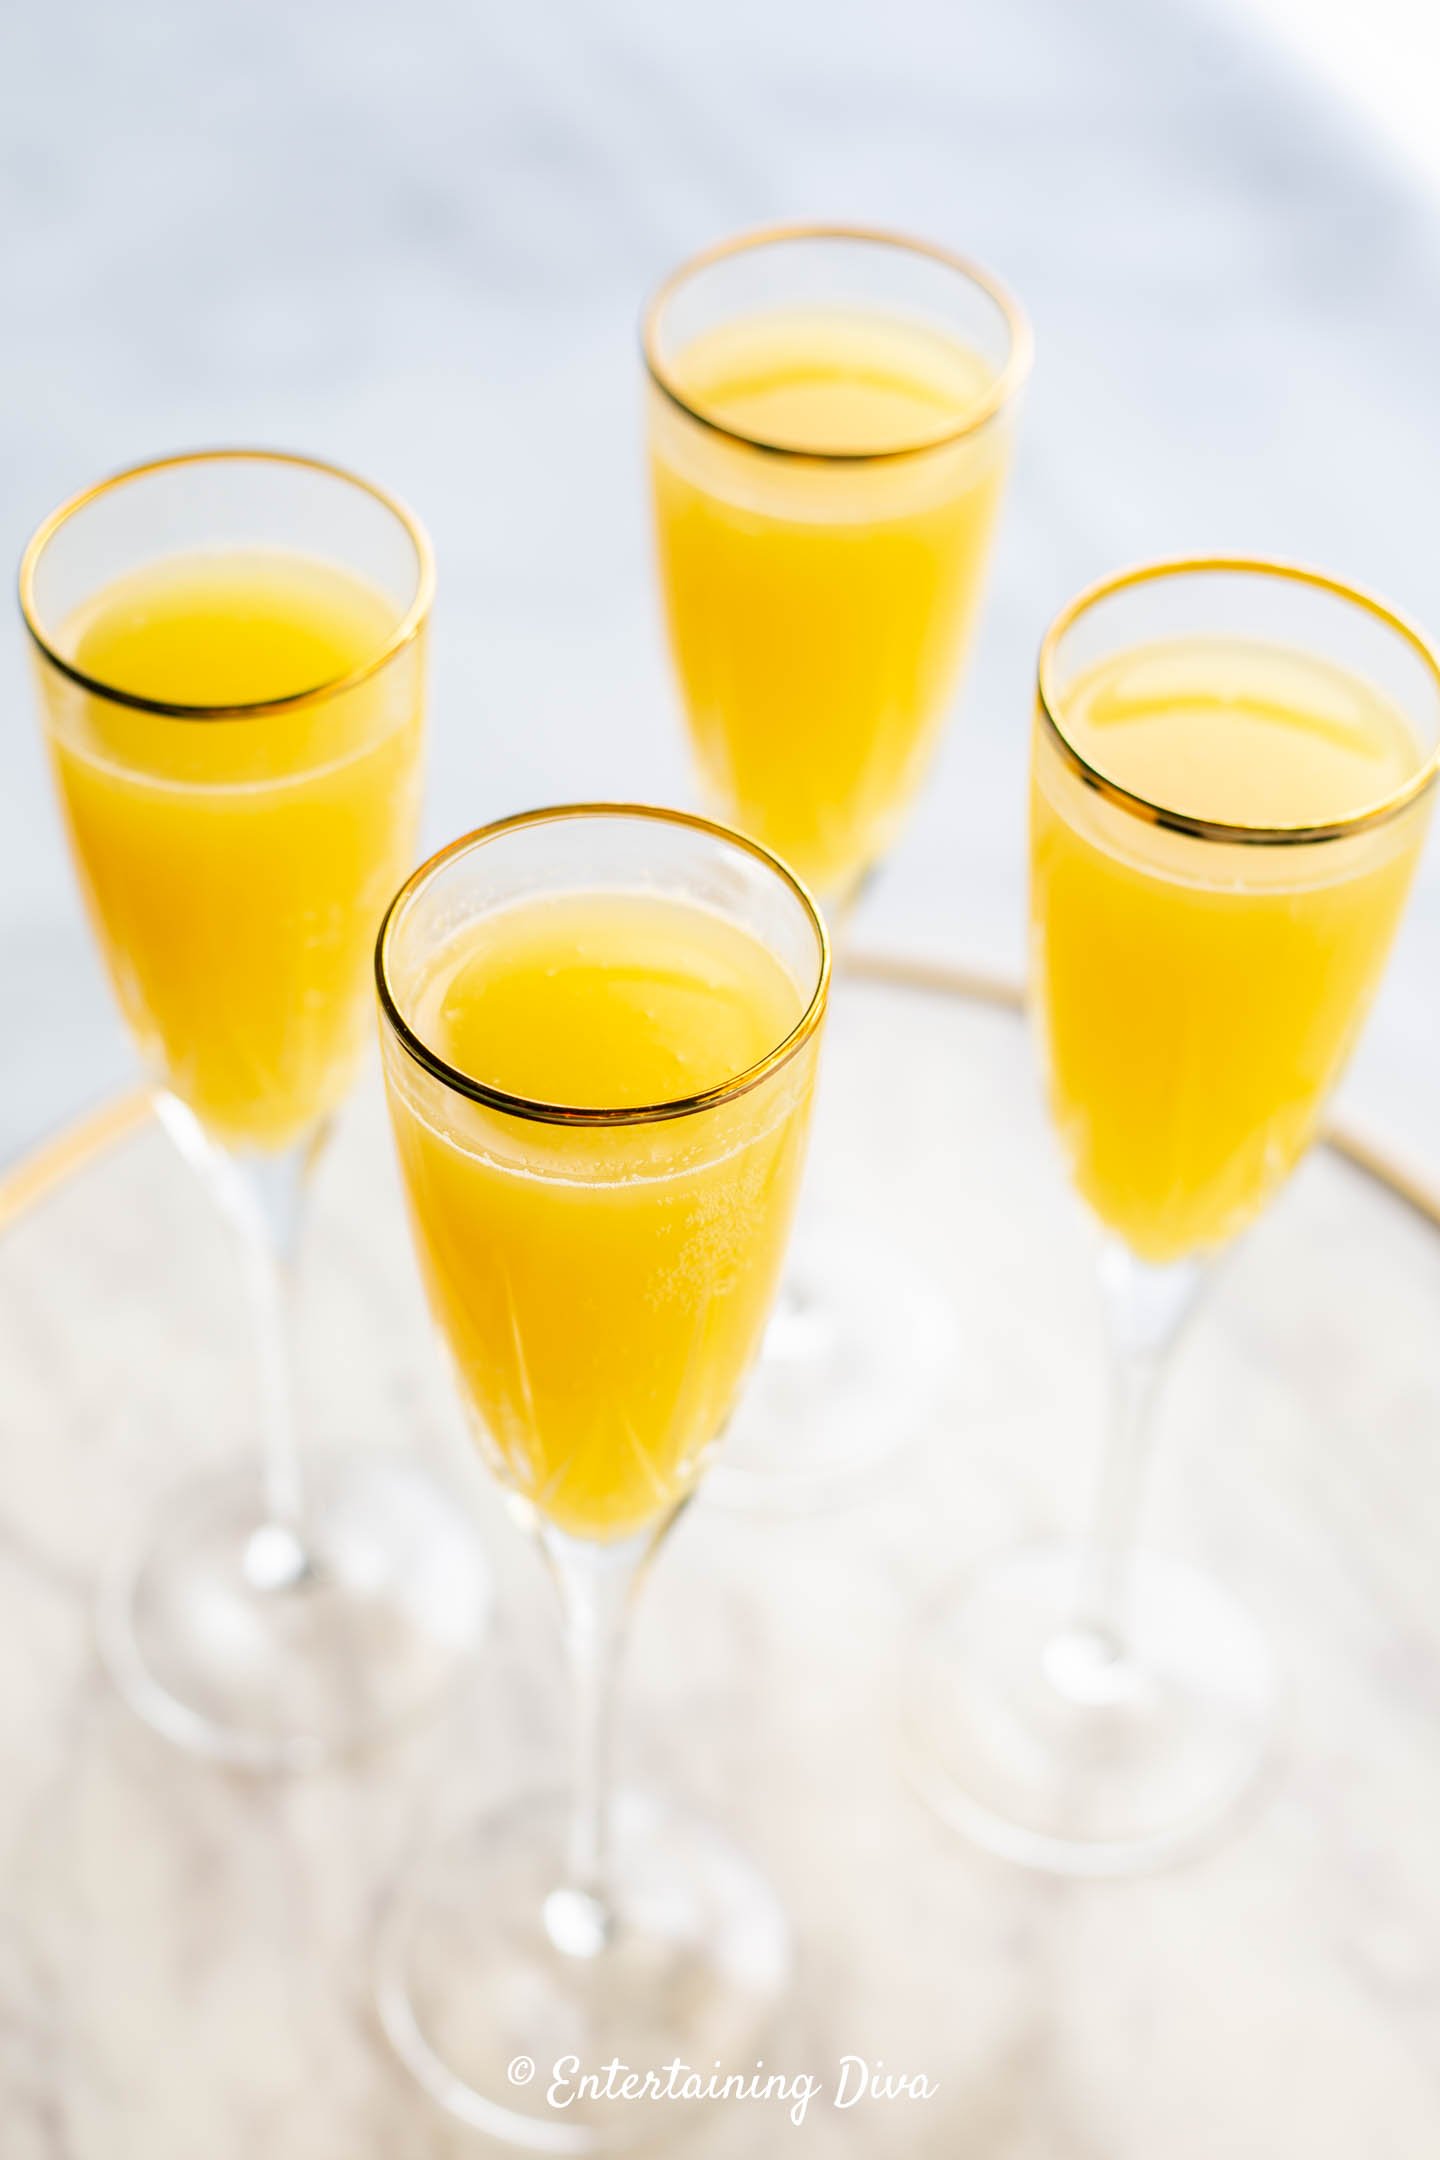 Classic mimosa recipe in champagne flute glasses